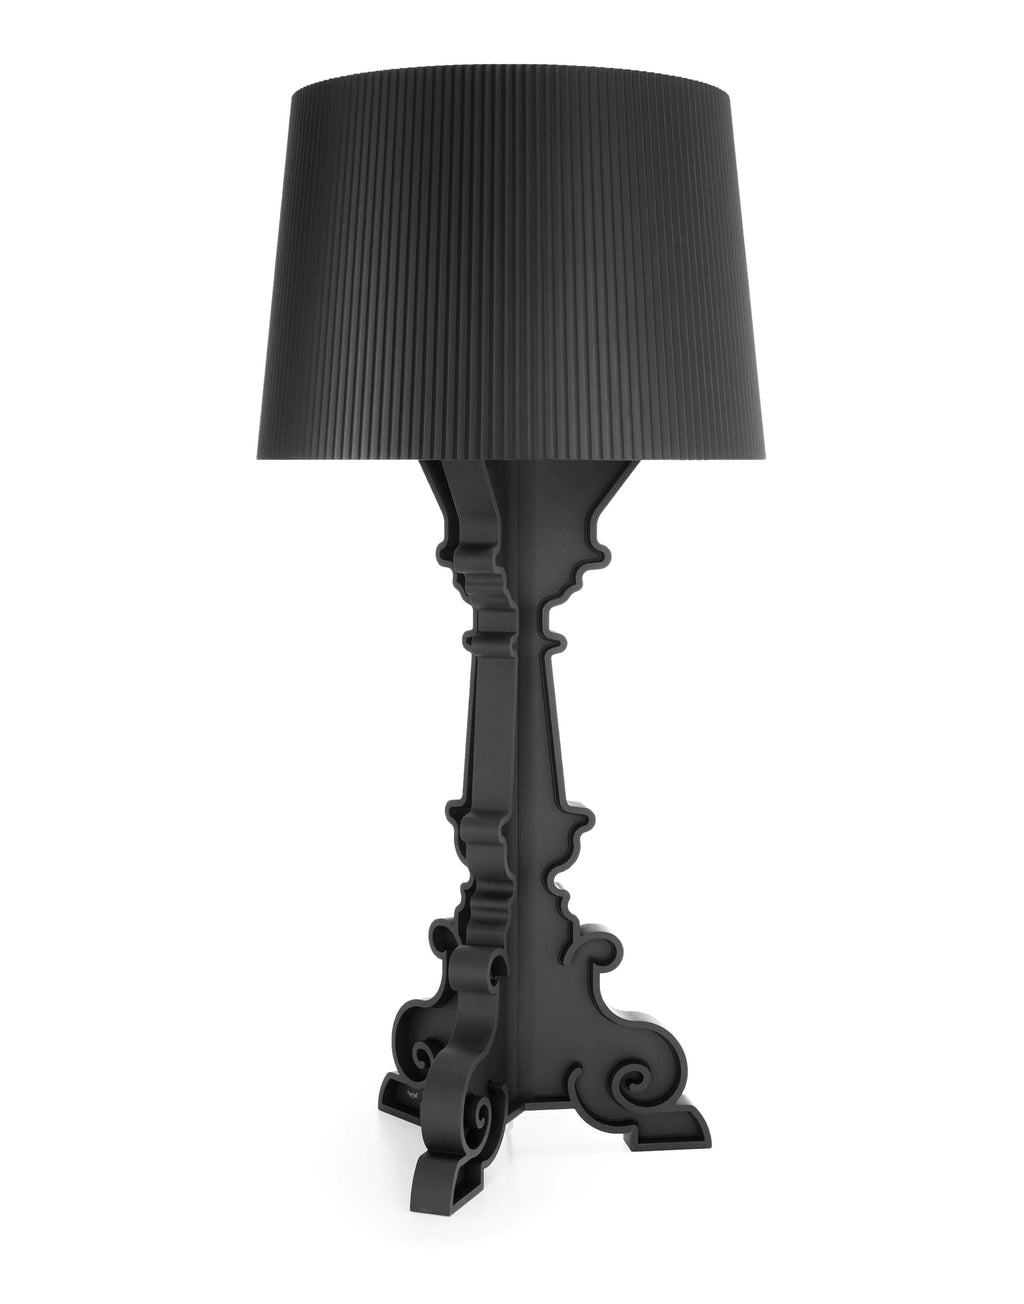 Lampe Bourgie Noir Mat Kartell, disponible chez I.D DECO Marseille et en livraison partout en France